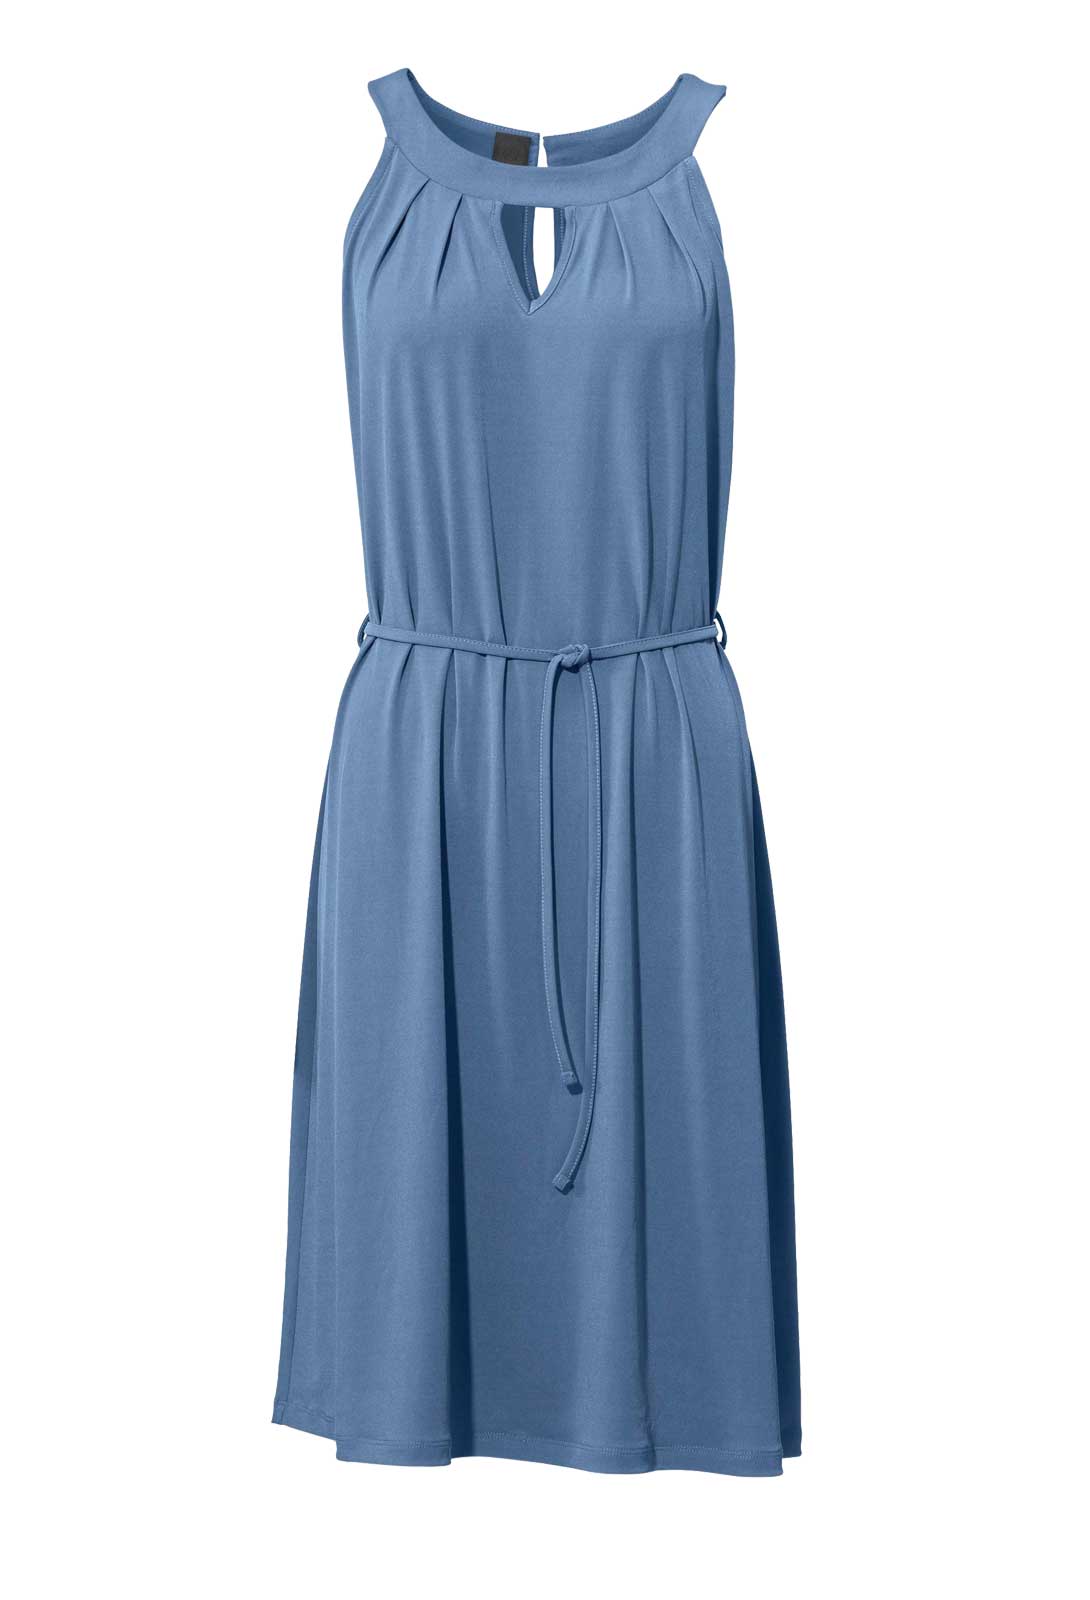 Heine - Best Connections Damen Jerseykleid, blau